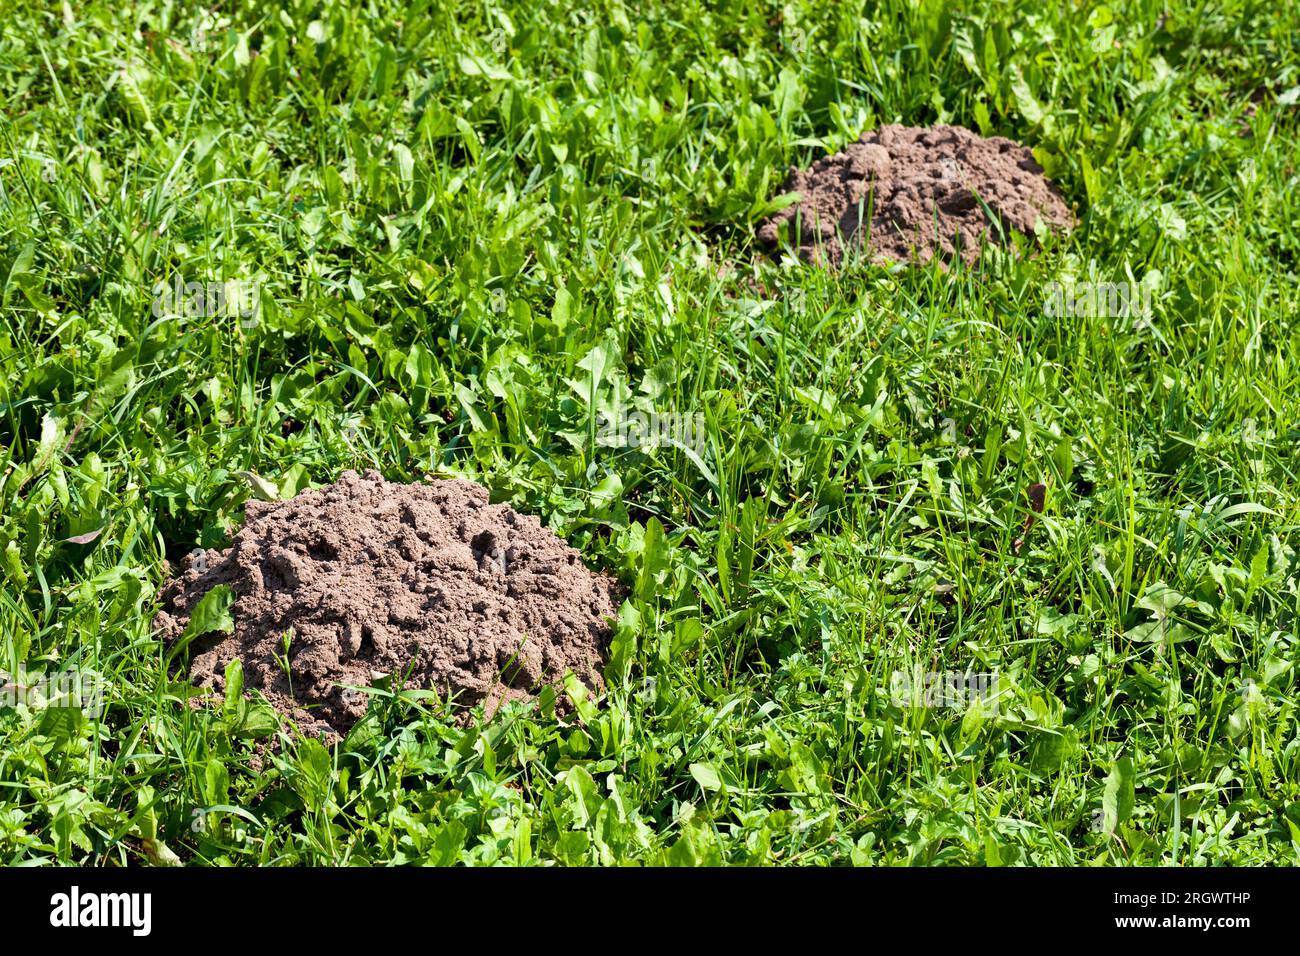 Der Boden, den ein Maulwurf auf einem Feld mit Gras gegraben hat, Molehill auf einem Feld mit Gras von Maulwürfen Stockfoto